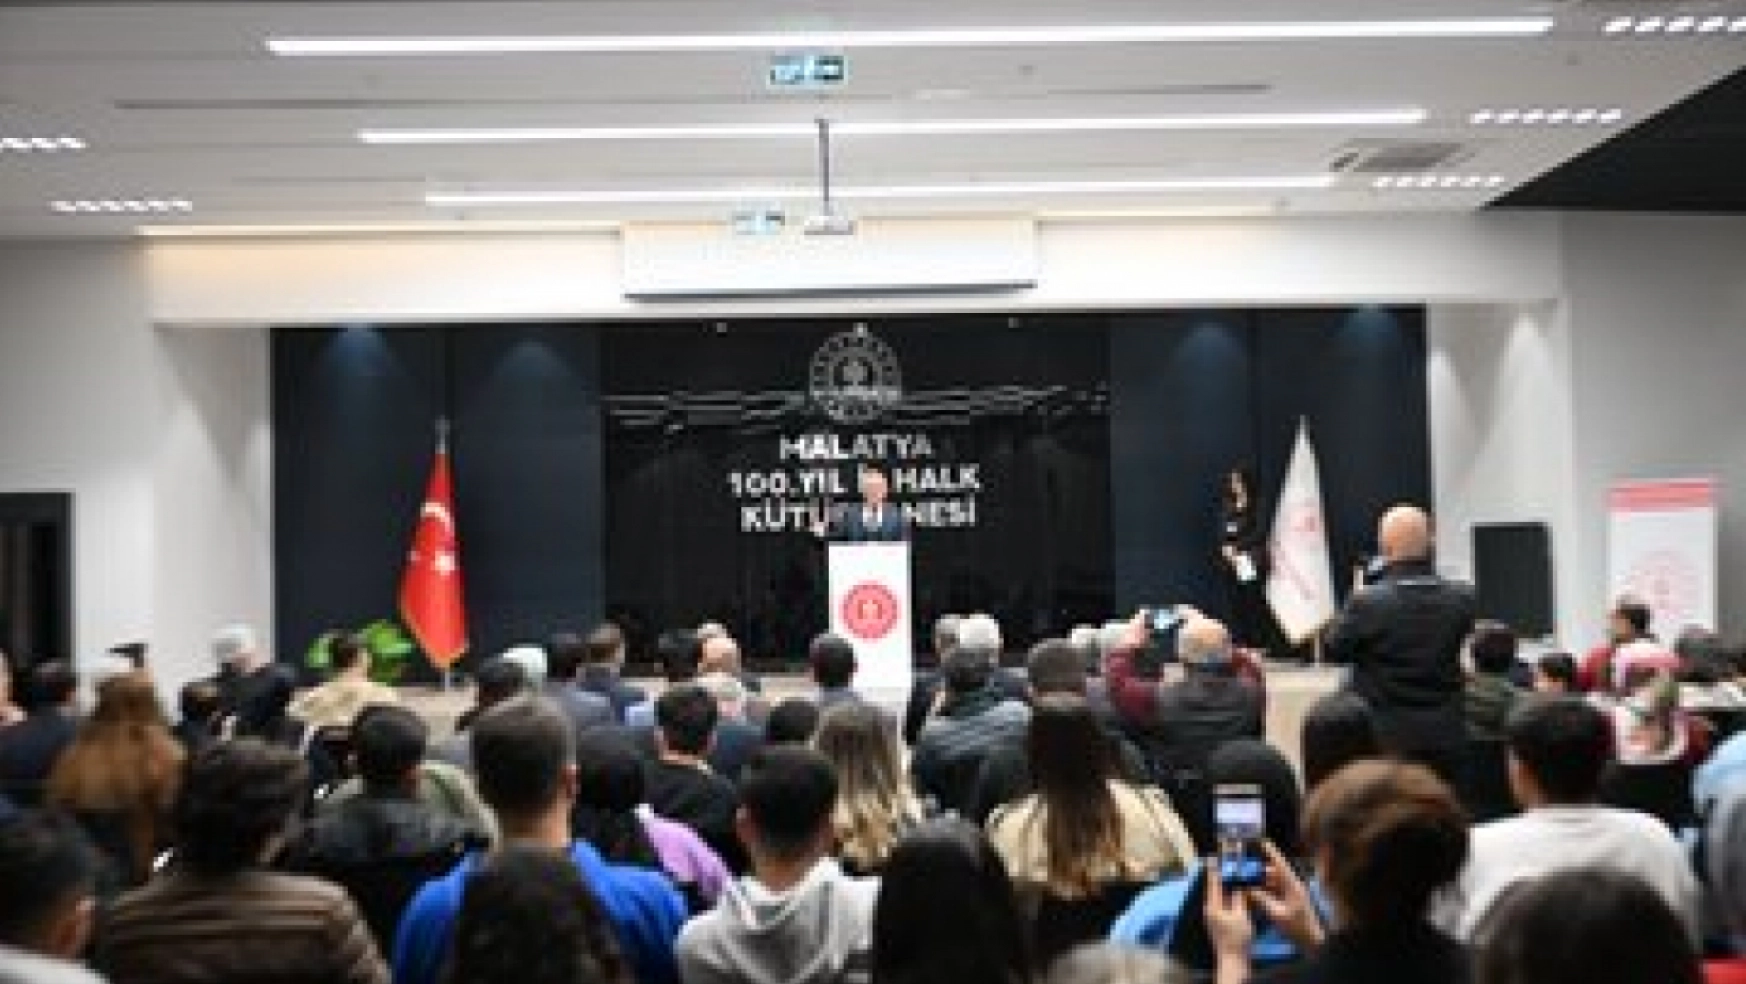 Vali Ersin Yazıcı 60. Kütüphane Haftası Programına Katıldı